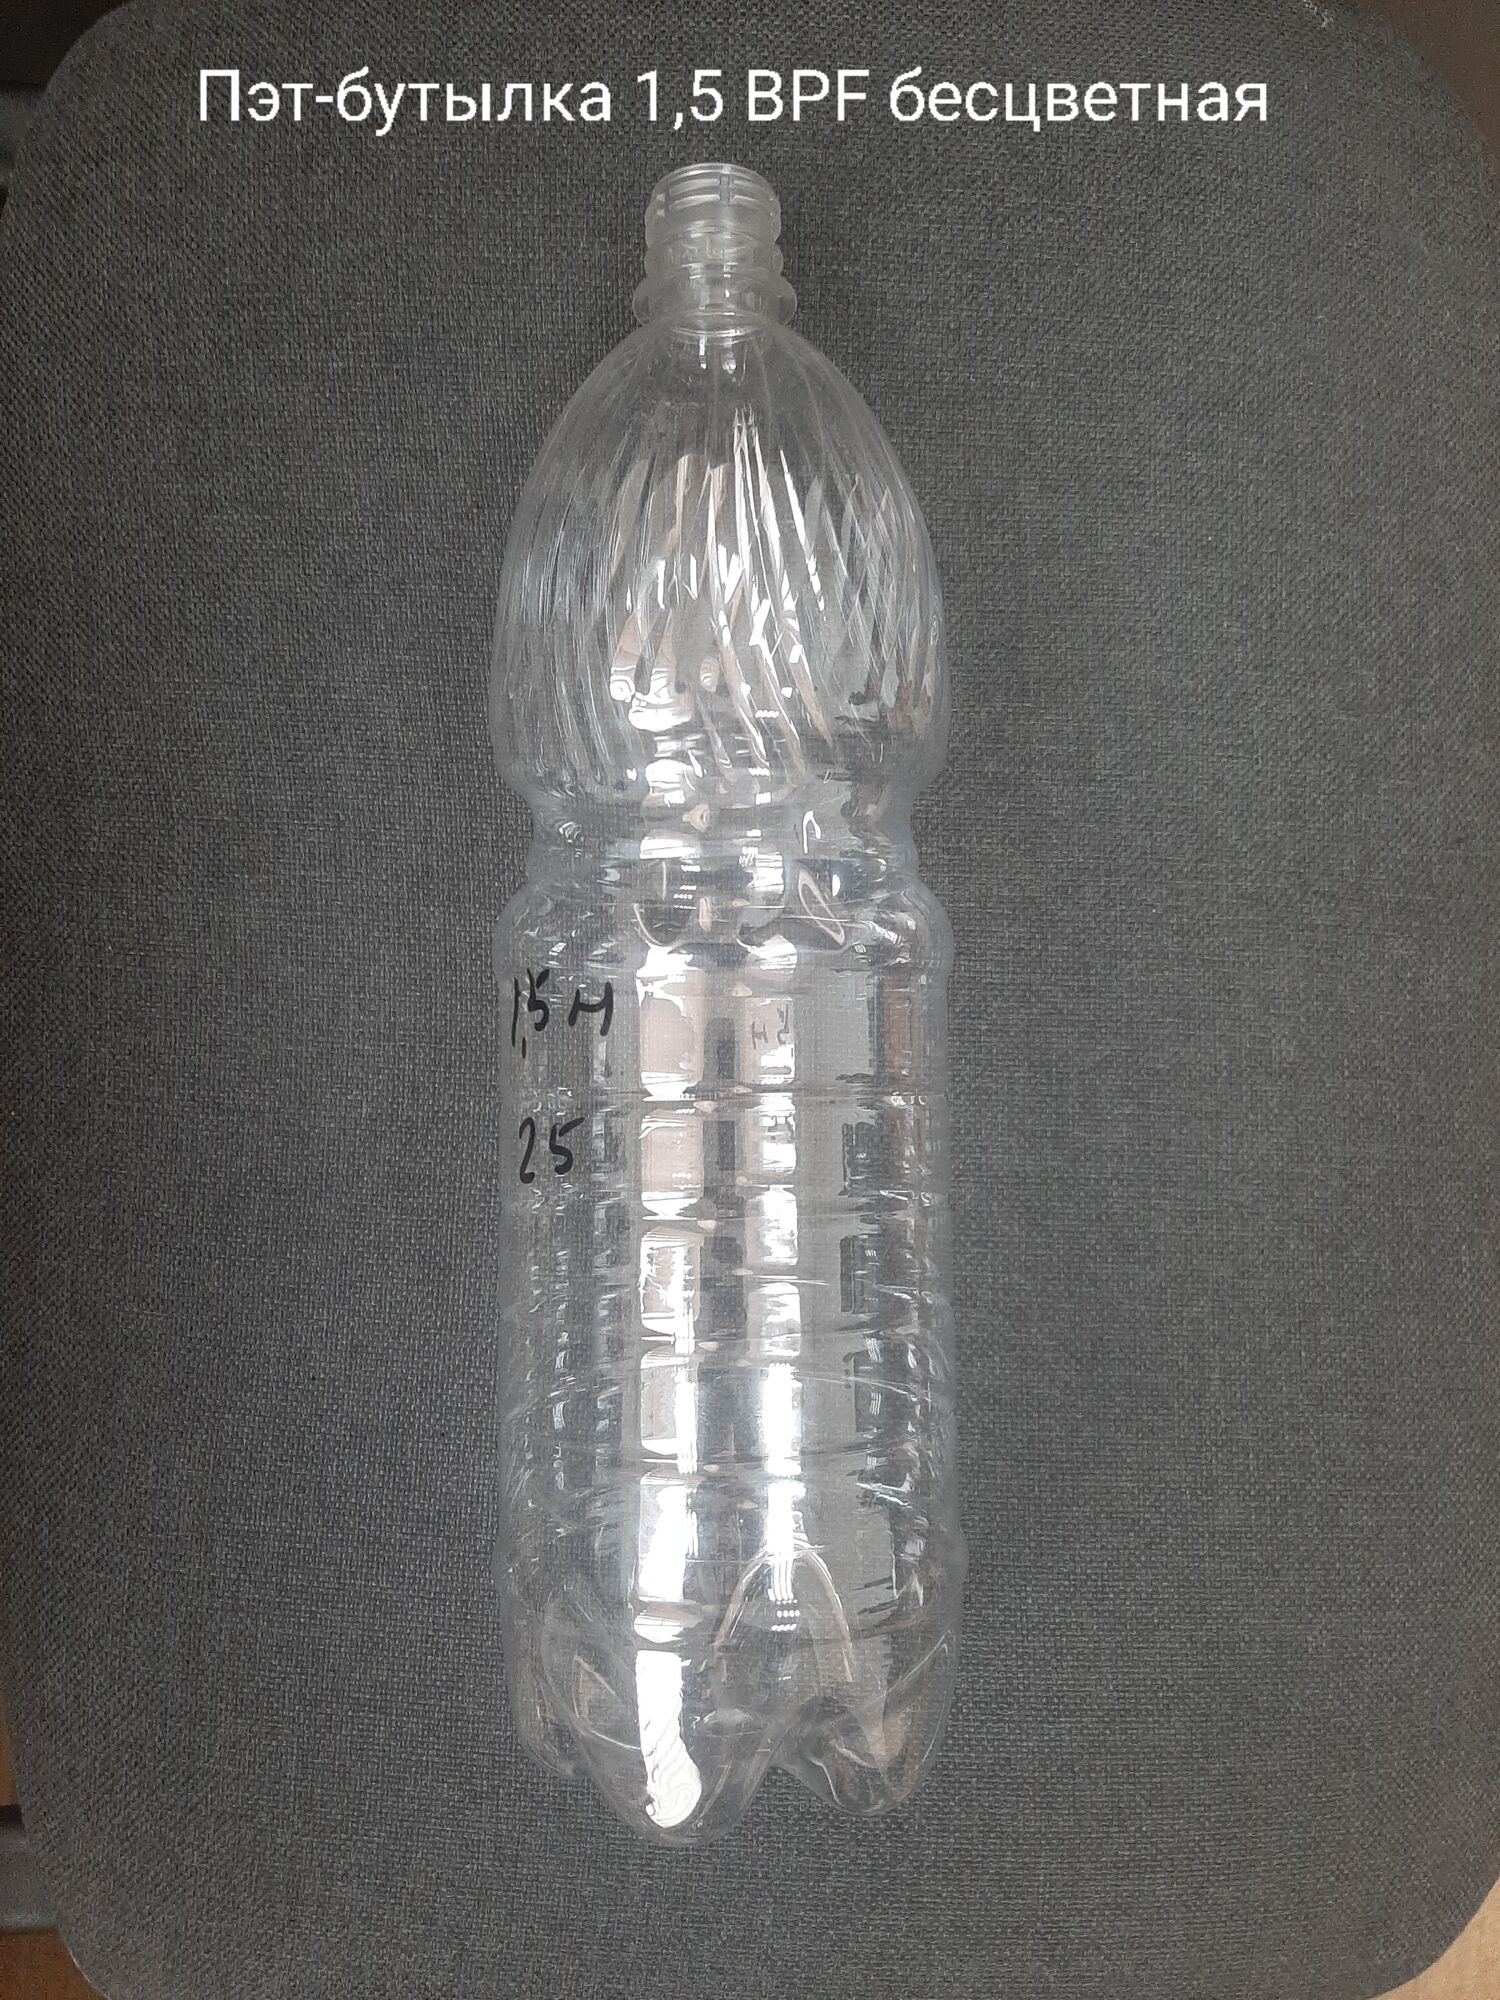 Пэт-бутылка 1,5 BPF, бесцветная (100 шт в упаковке) вес 25 гр.